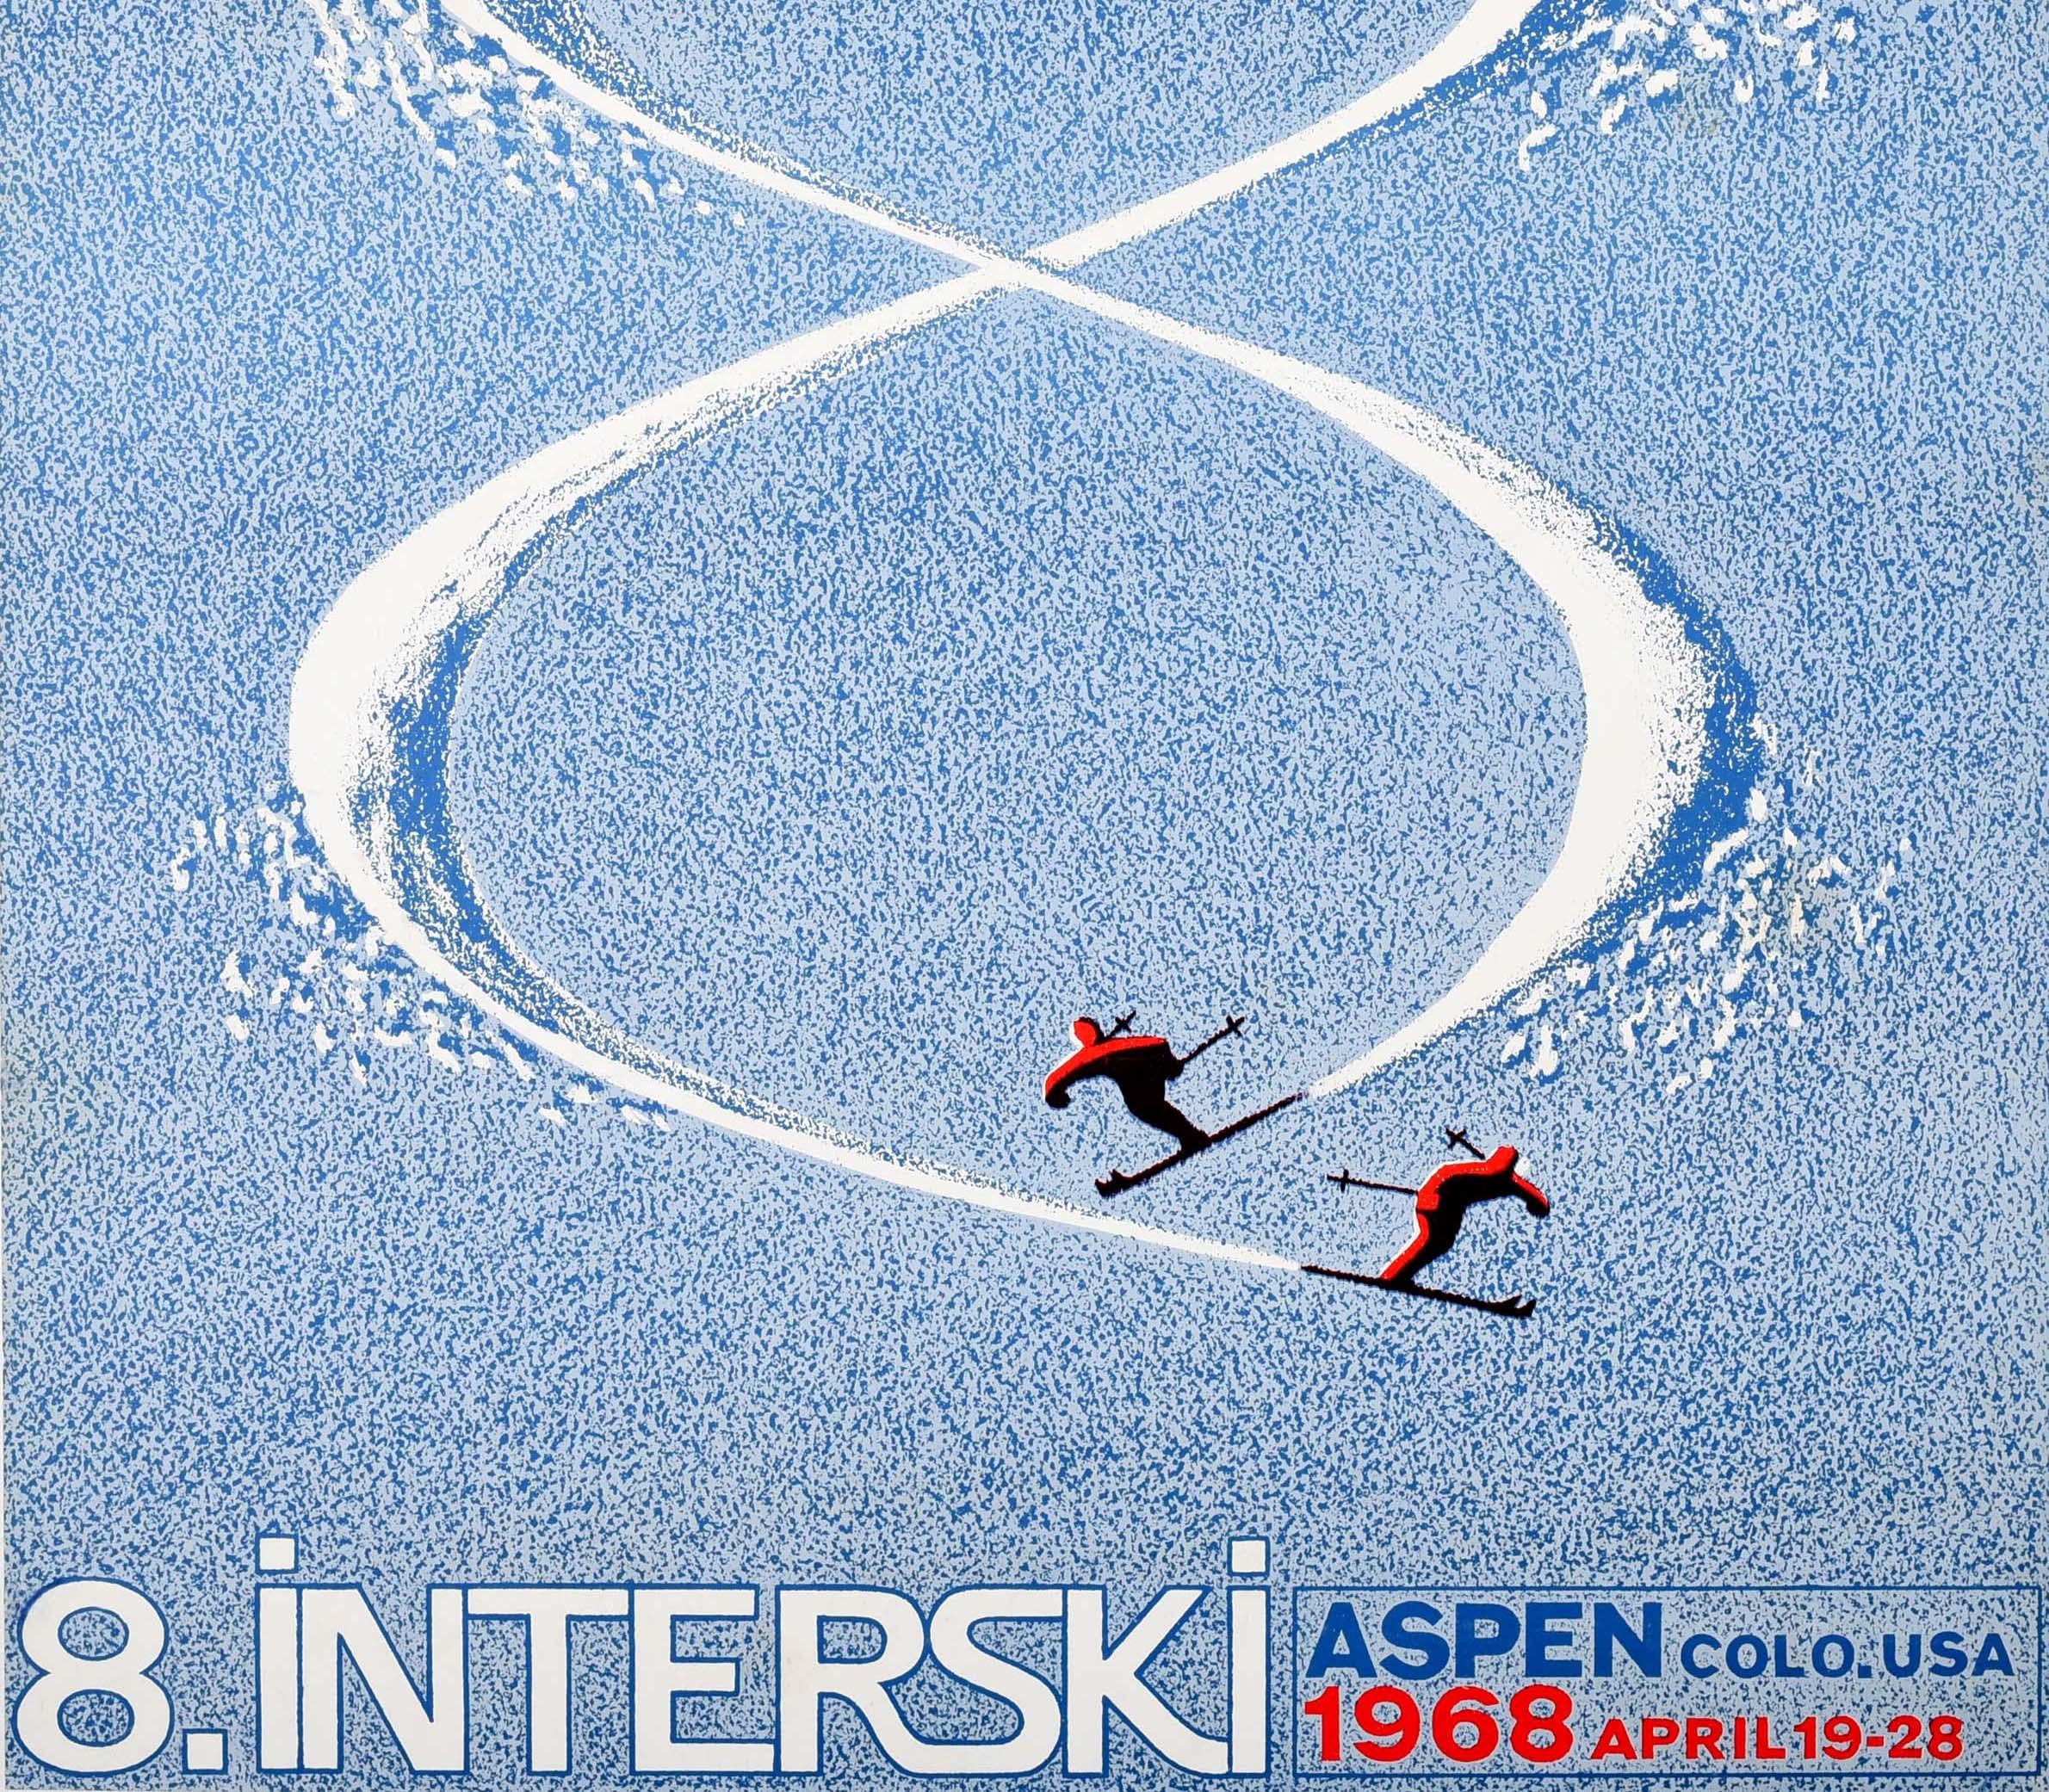 Original-Wintersportplakat für die 8. Interski Aspen Colorado USA 1968 19-28 April. Großartiges Design, das zwei Skifahrer in Rot zeigt, die übereinander einen Hang hinunterfahren, um die Zahl 8 im Schnee zu bilden, mit dem Text darunter. Der